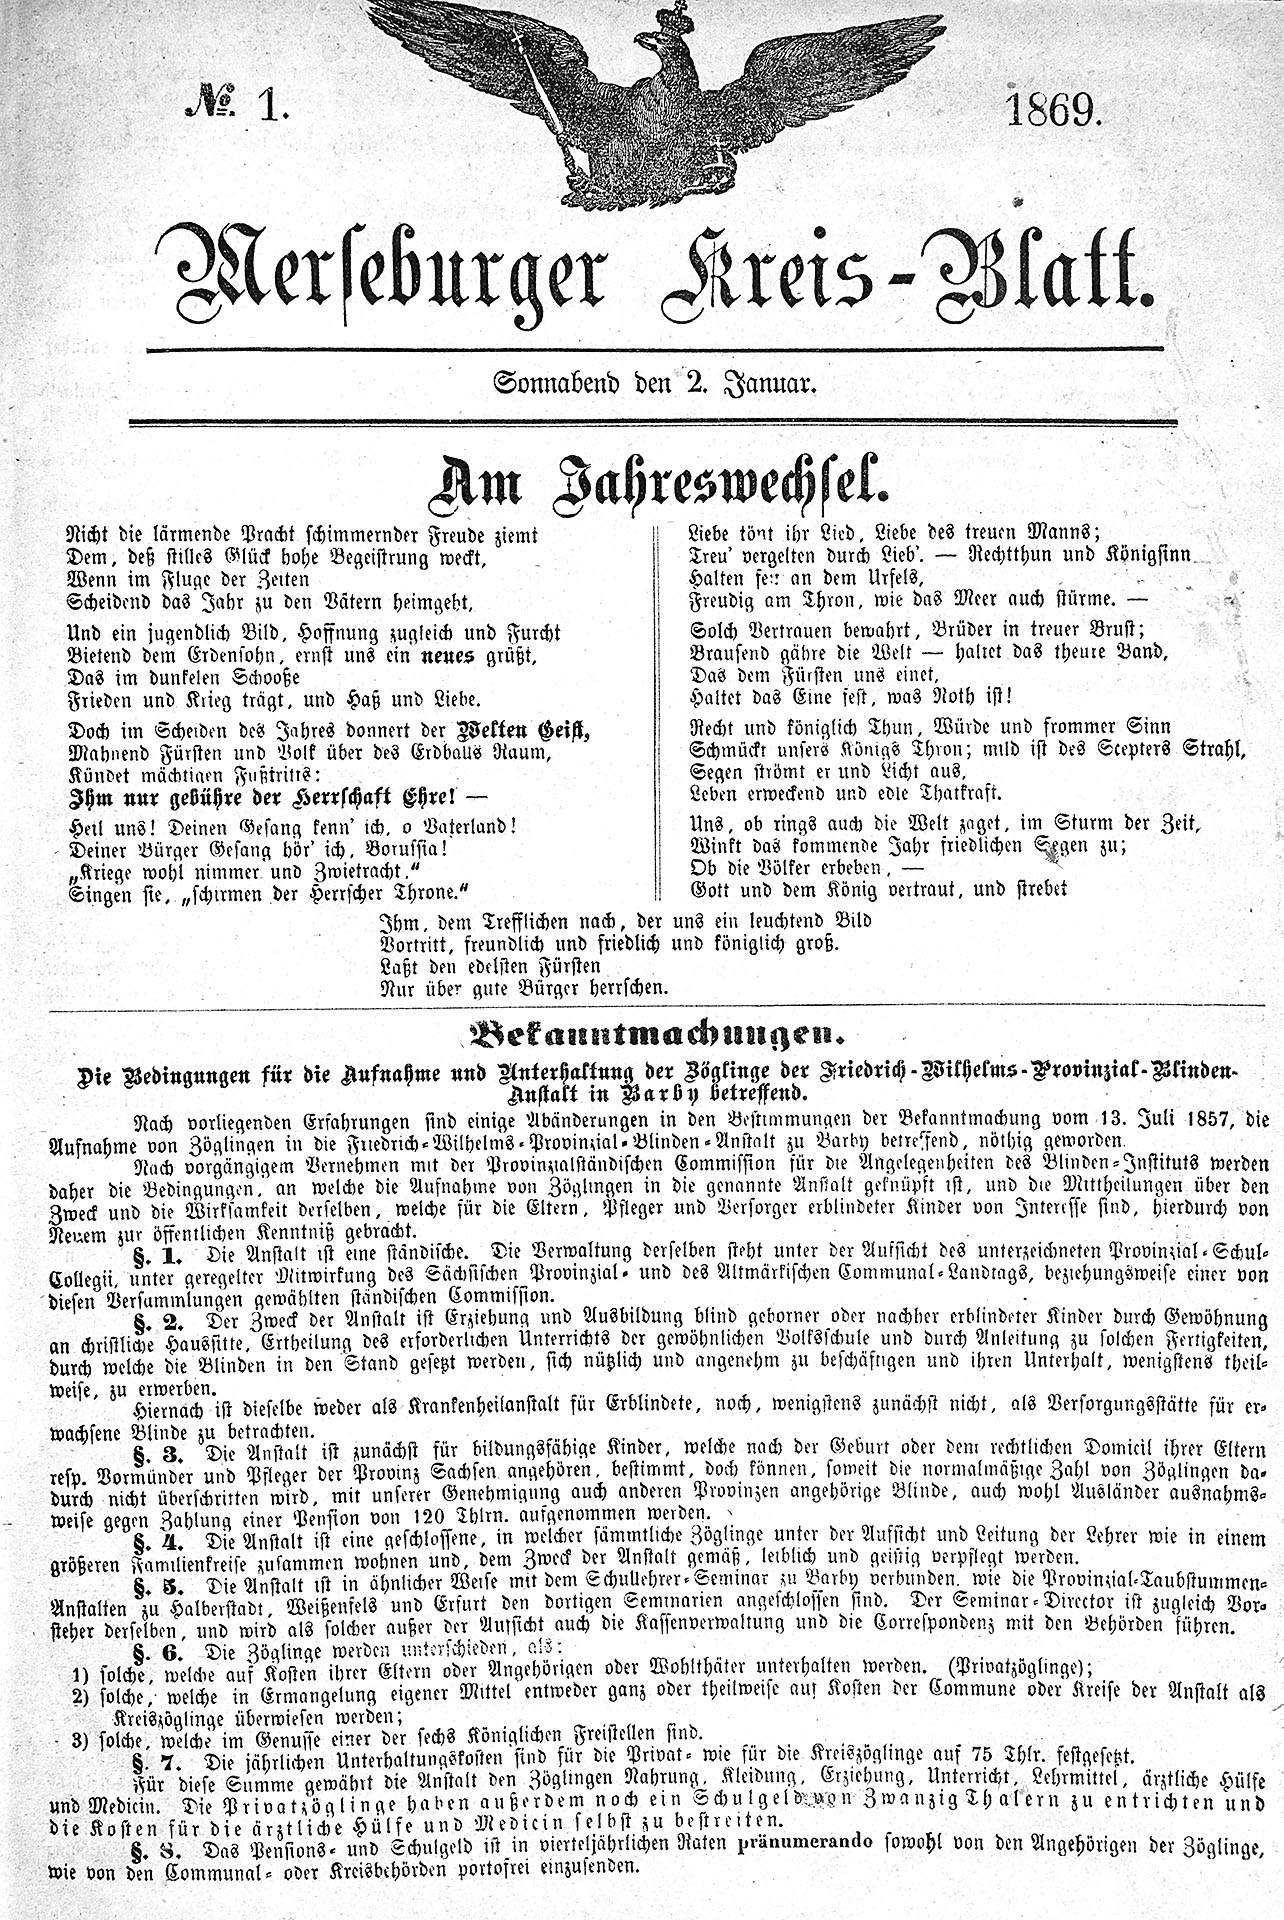 Merseburger Kreis - Blatt - Januar - Dezember 1869